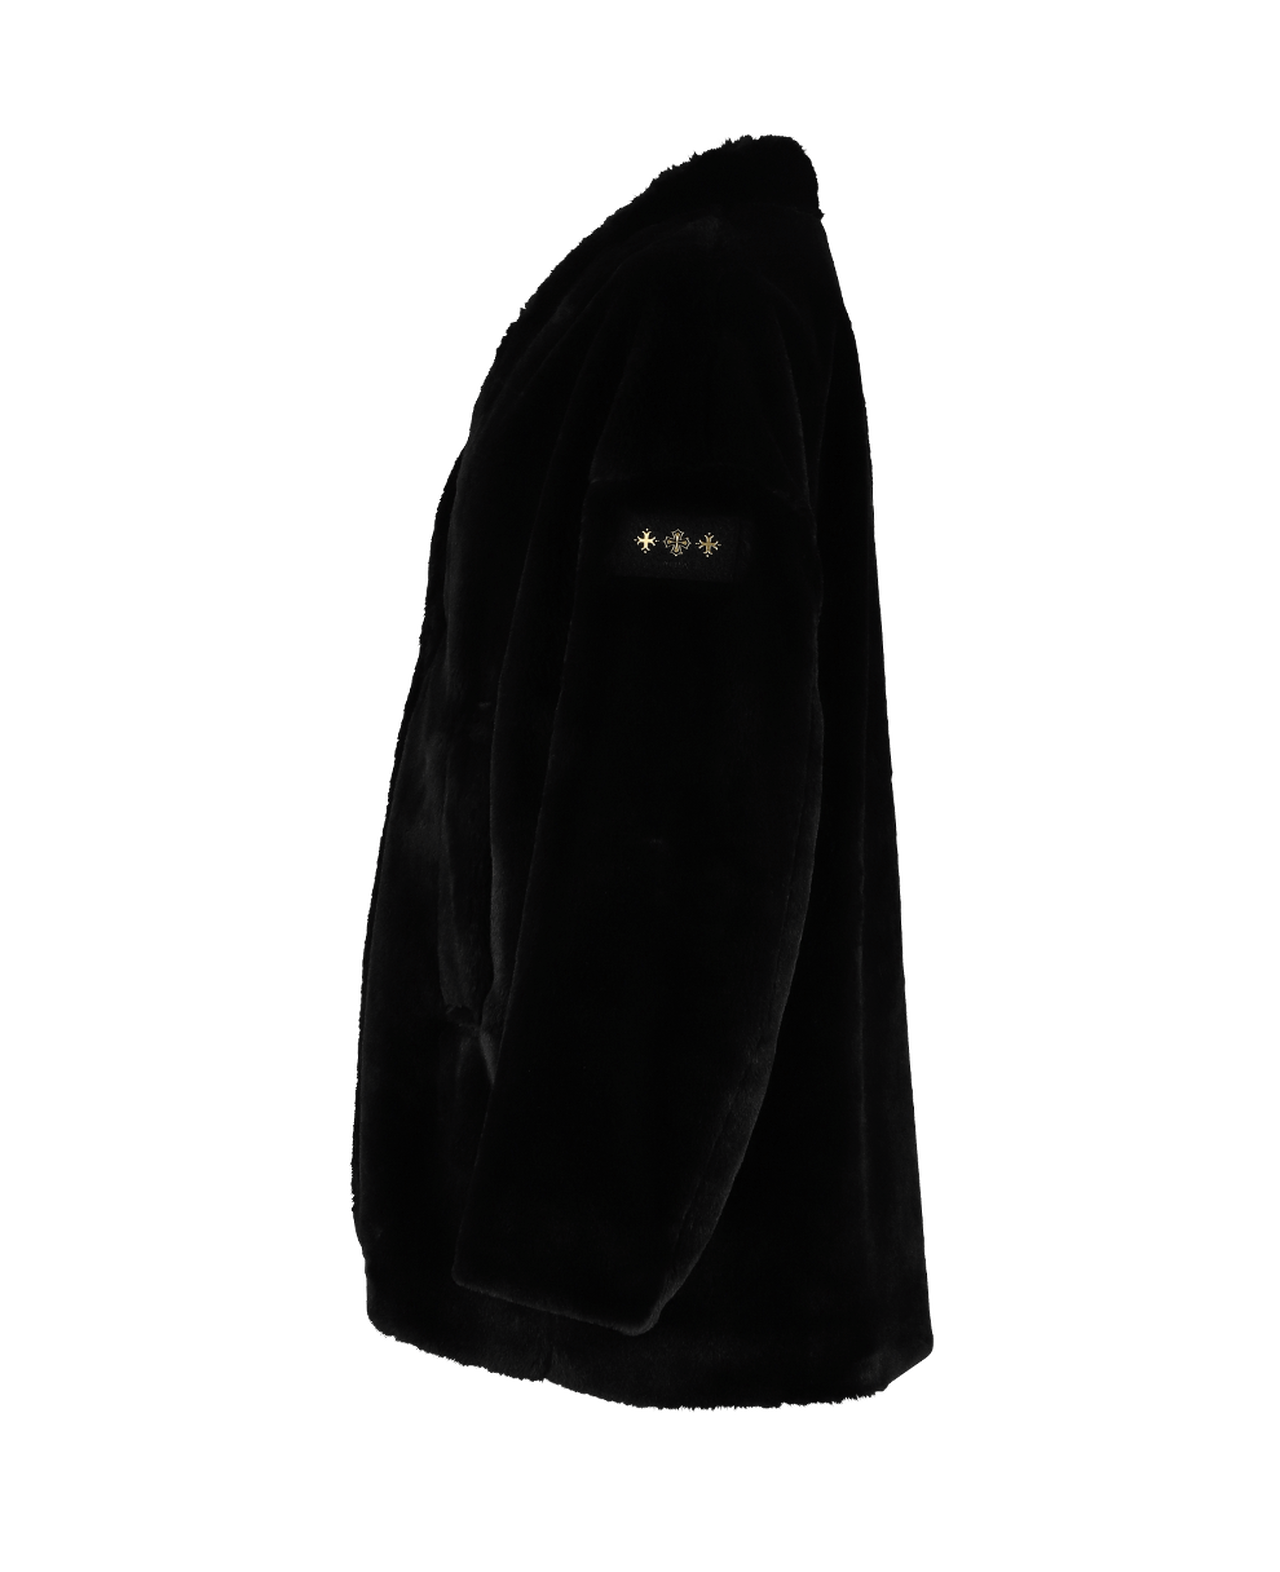 NINO Women's Jacket,BLACK, large image number 1